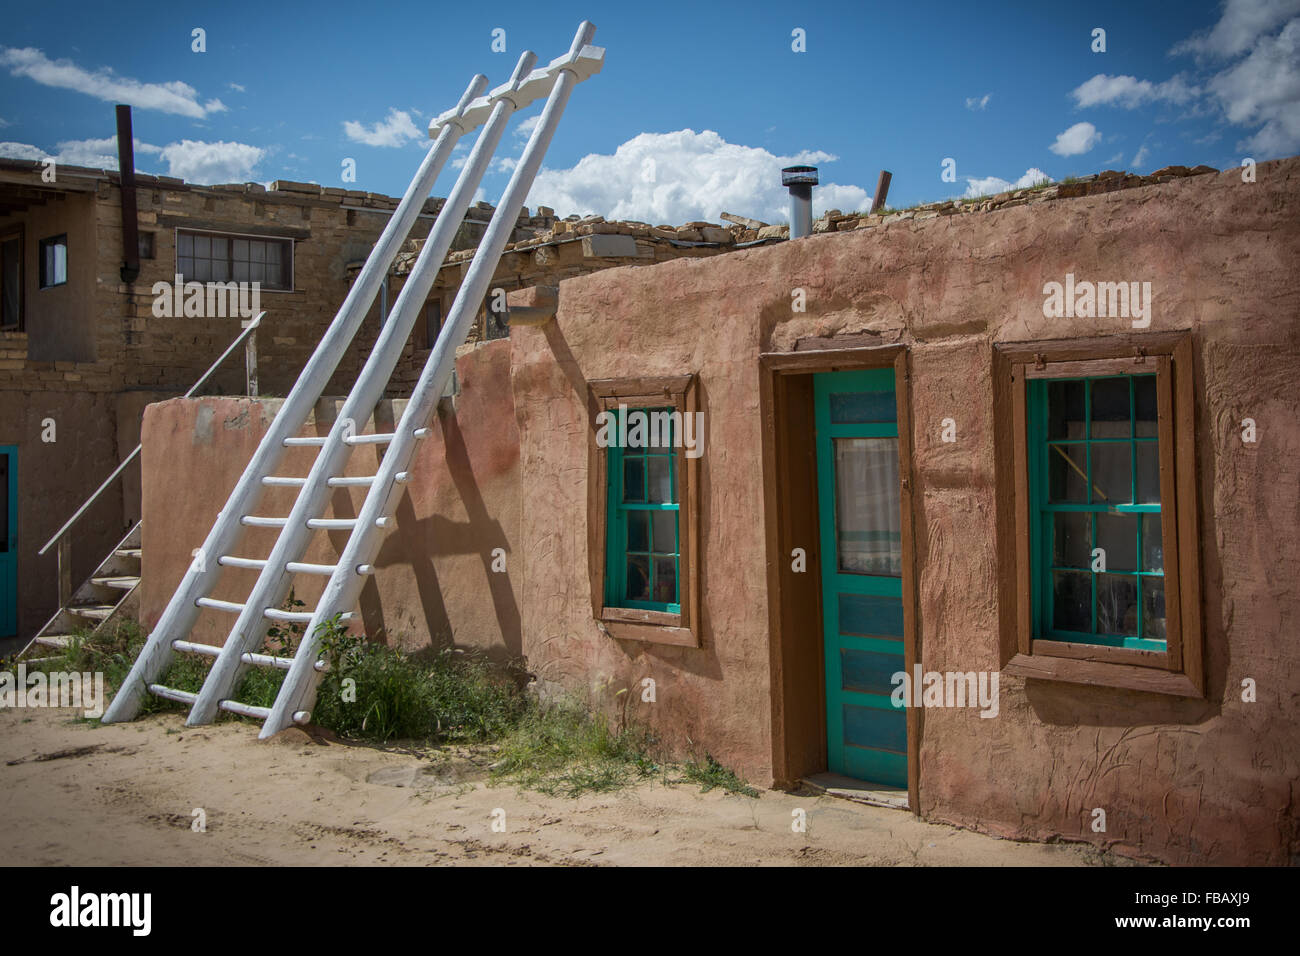 Adobe Häusern Sky City, Acoma Pueblo in New Mexico Stockfoto